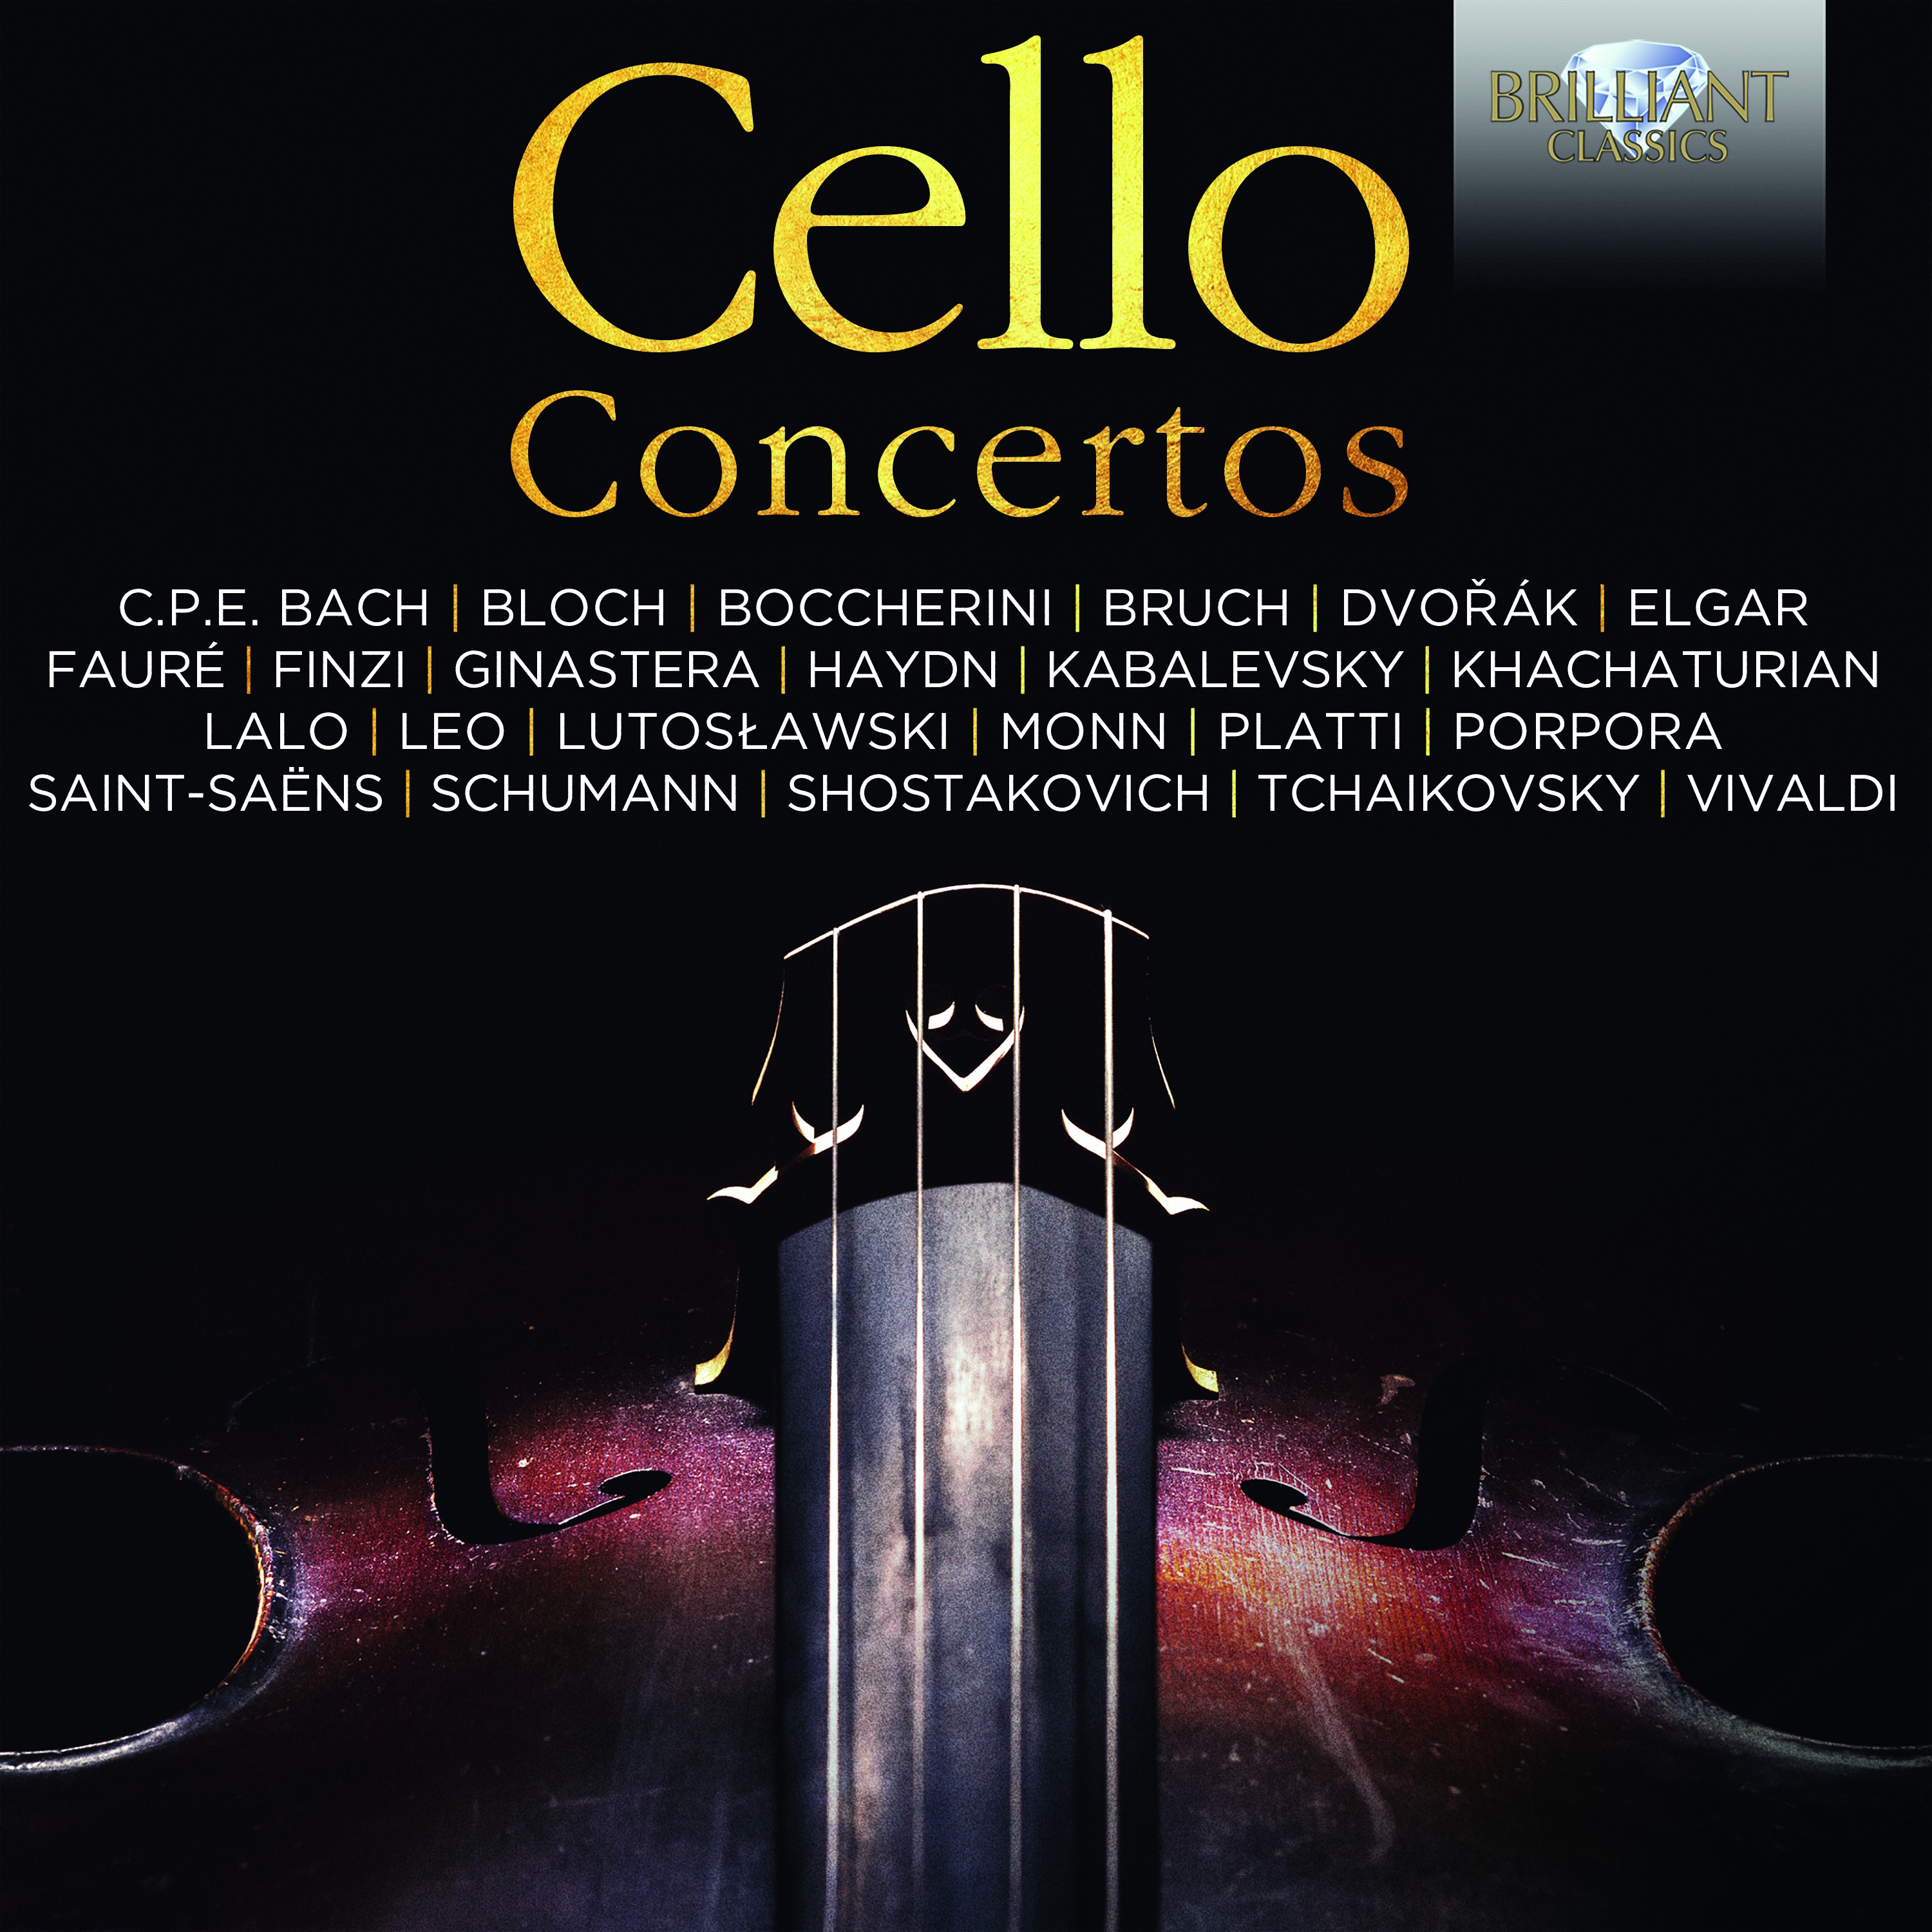 Cello Concerto No. 1, Op. 36: II. Presto sfumato - Trio notturnale